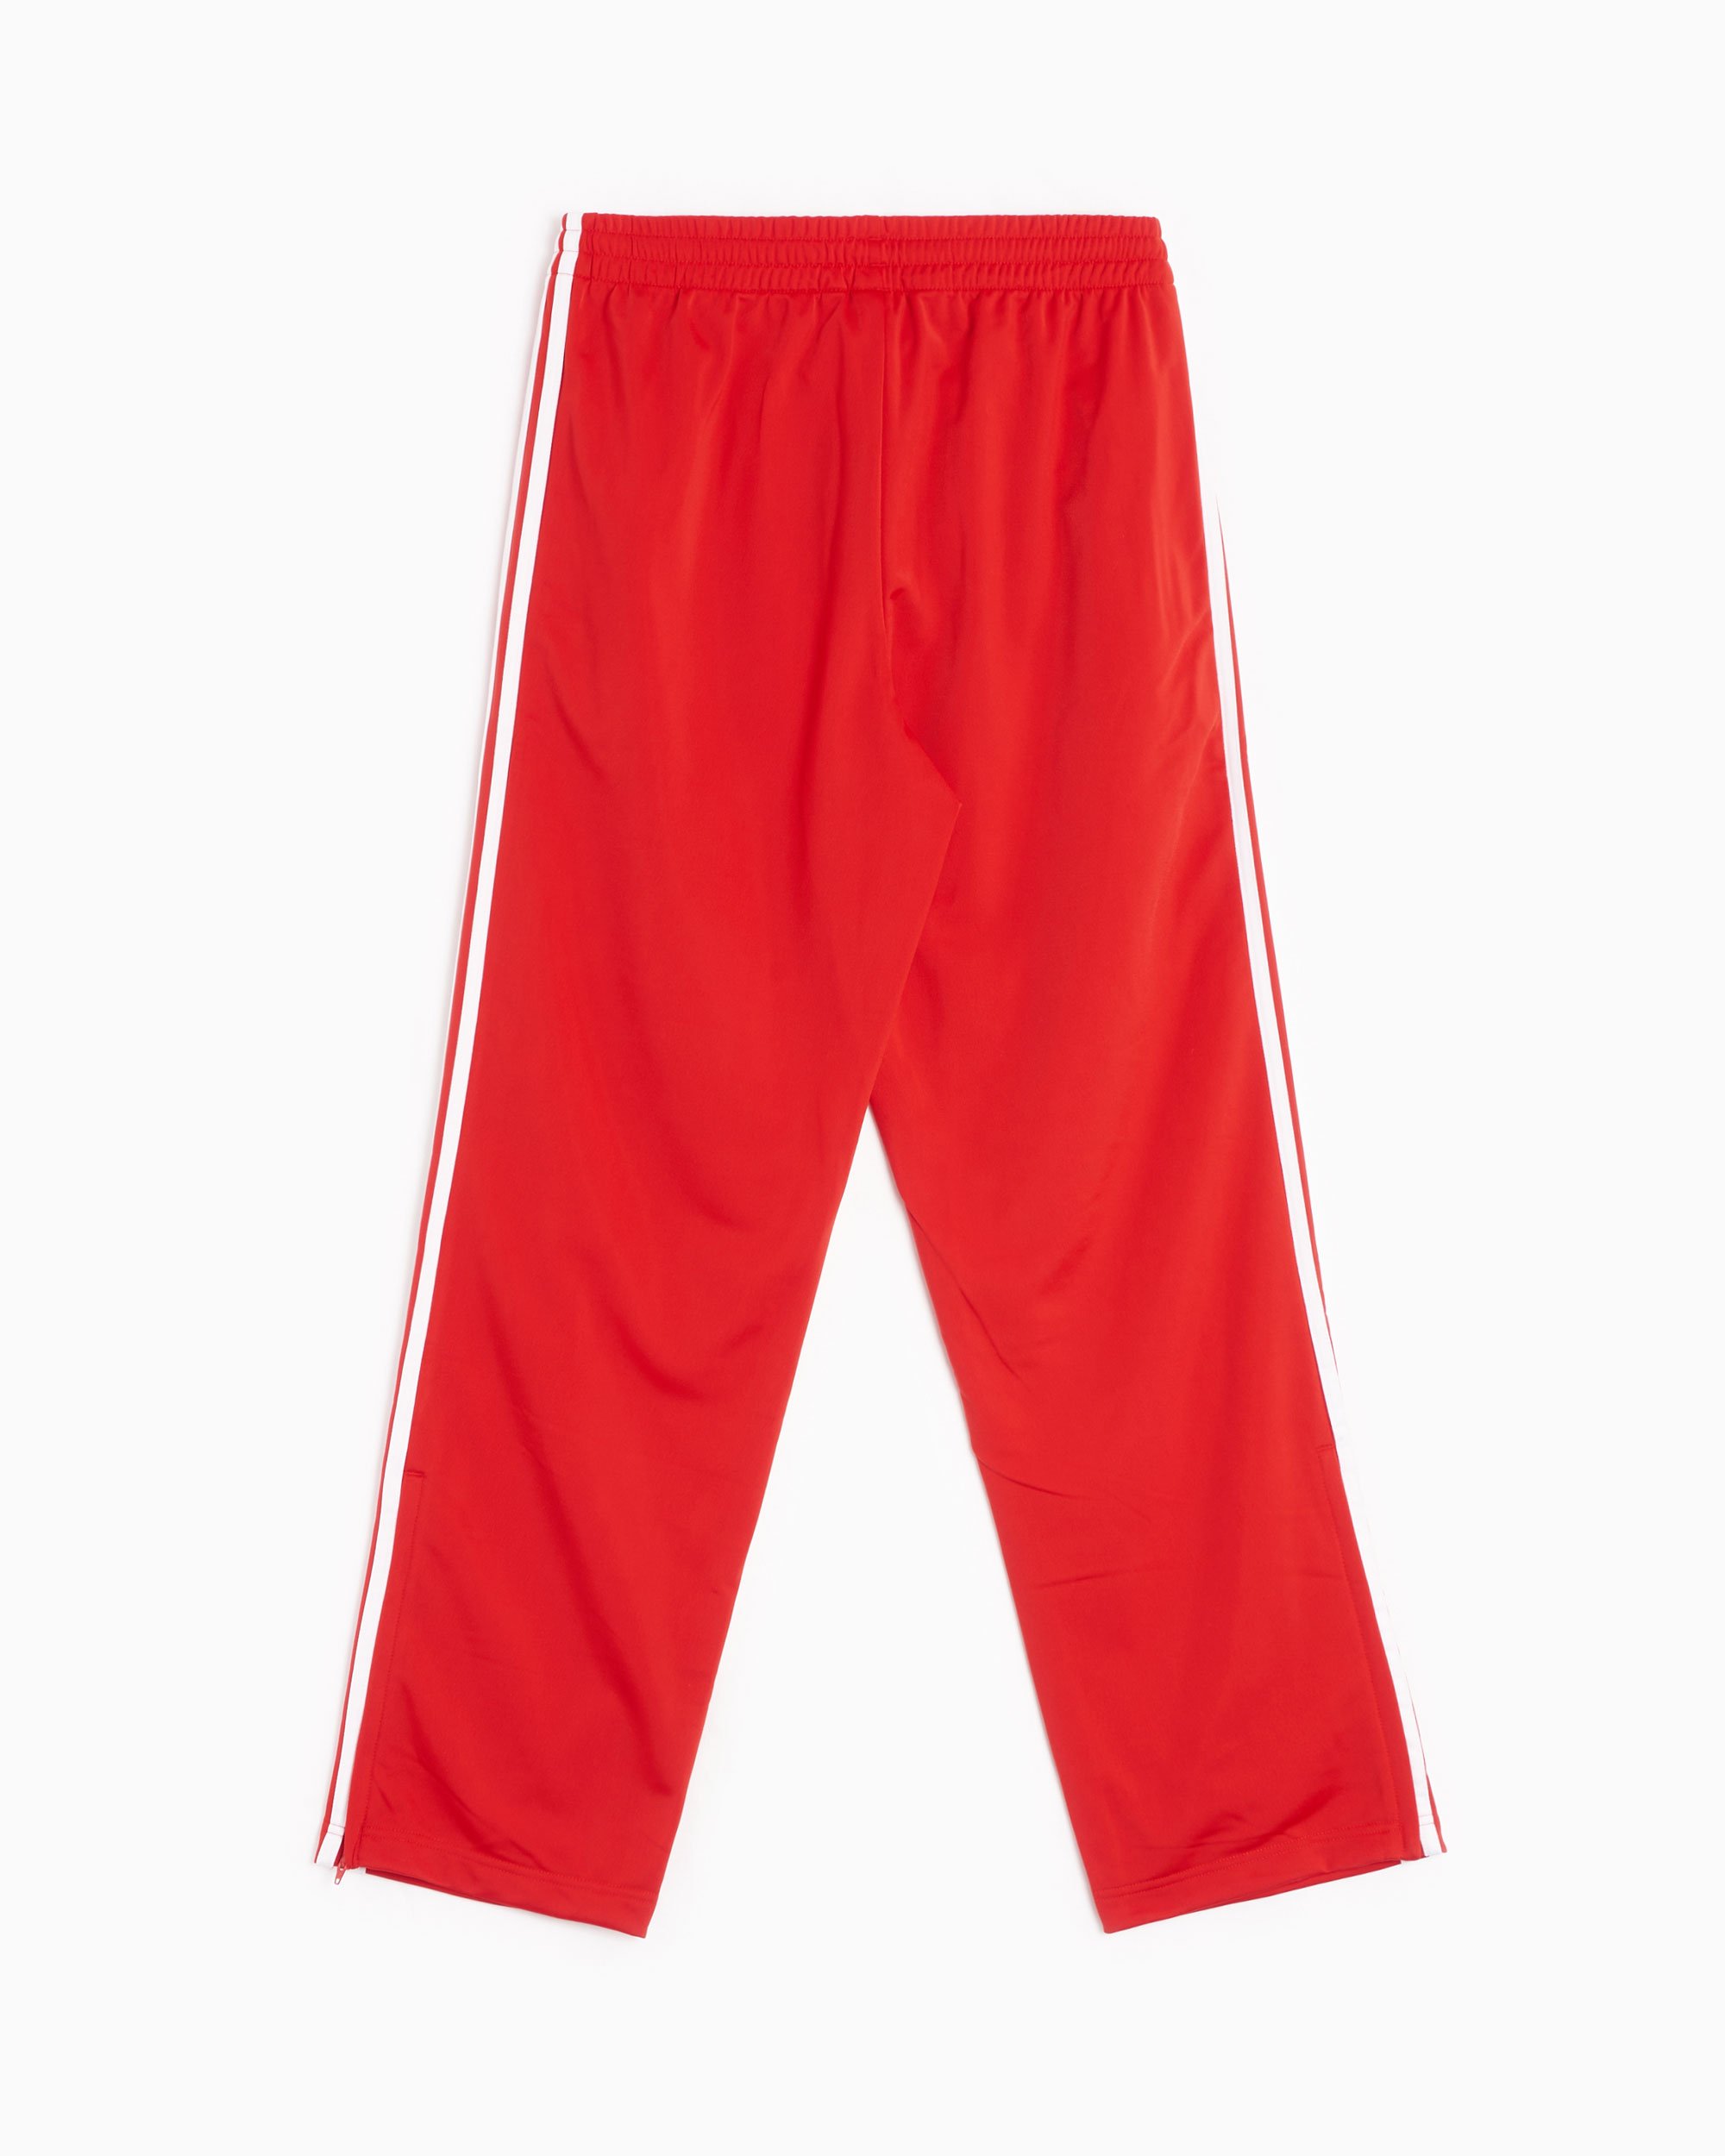 adidas Originals Adicolor Classics Firebird Men's Track Pants Red